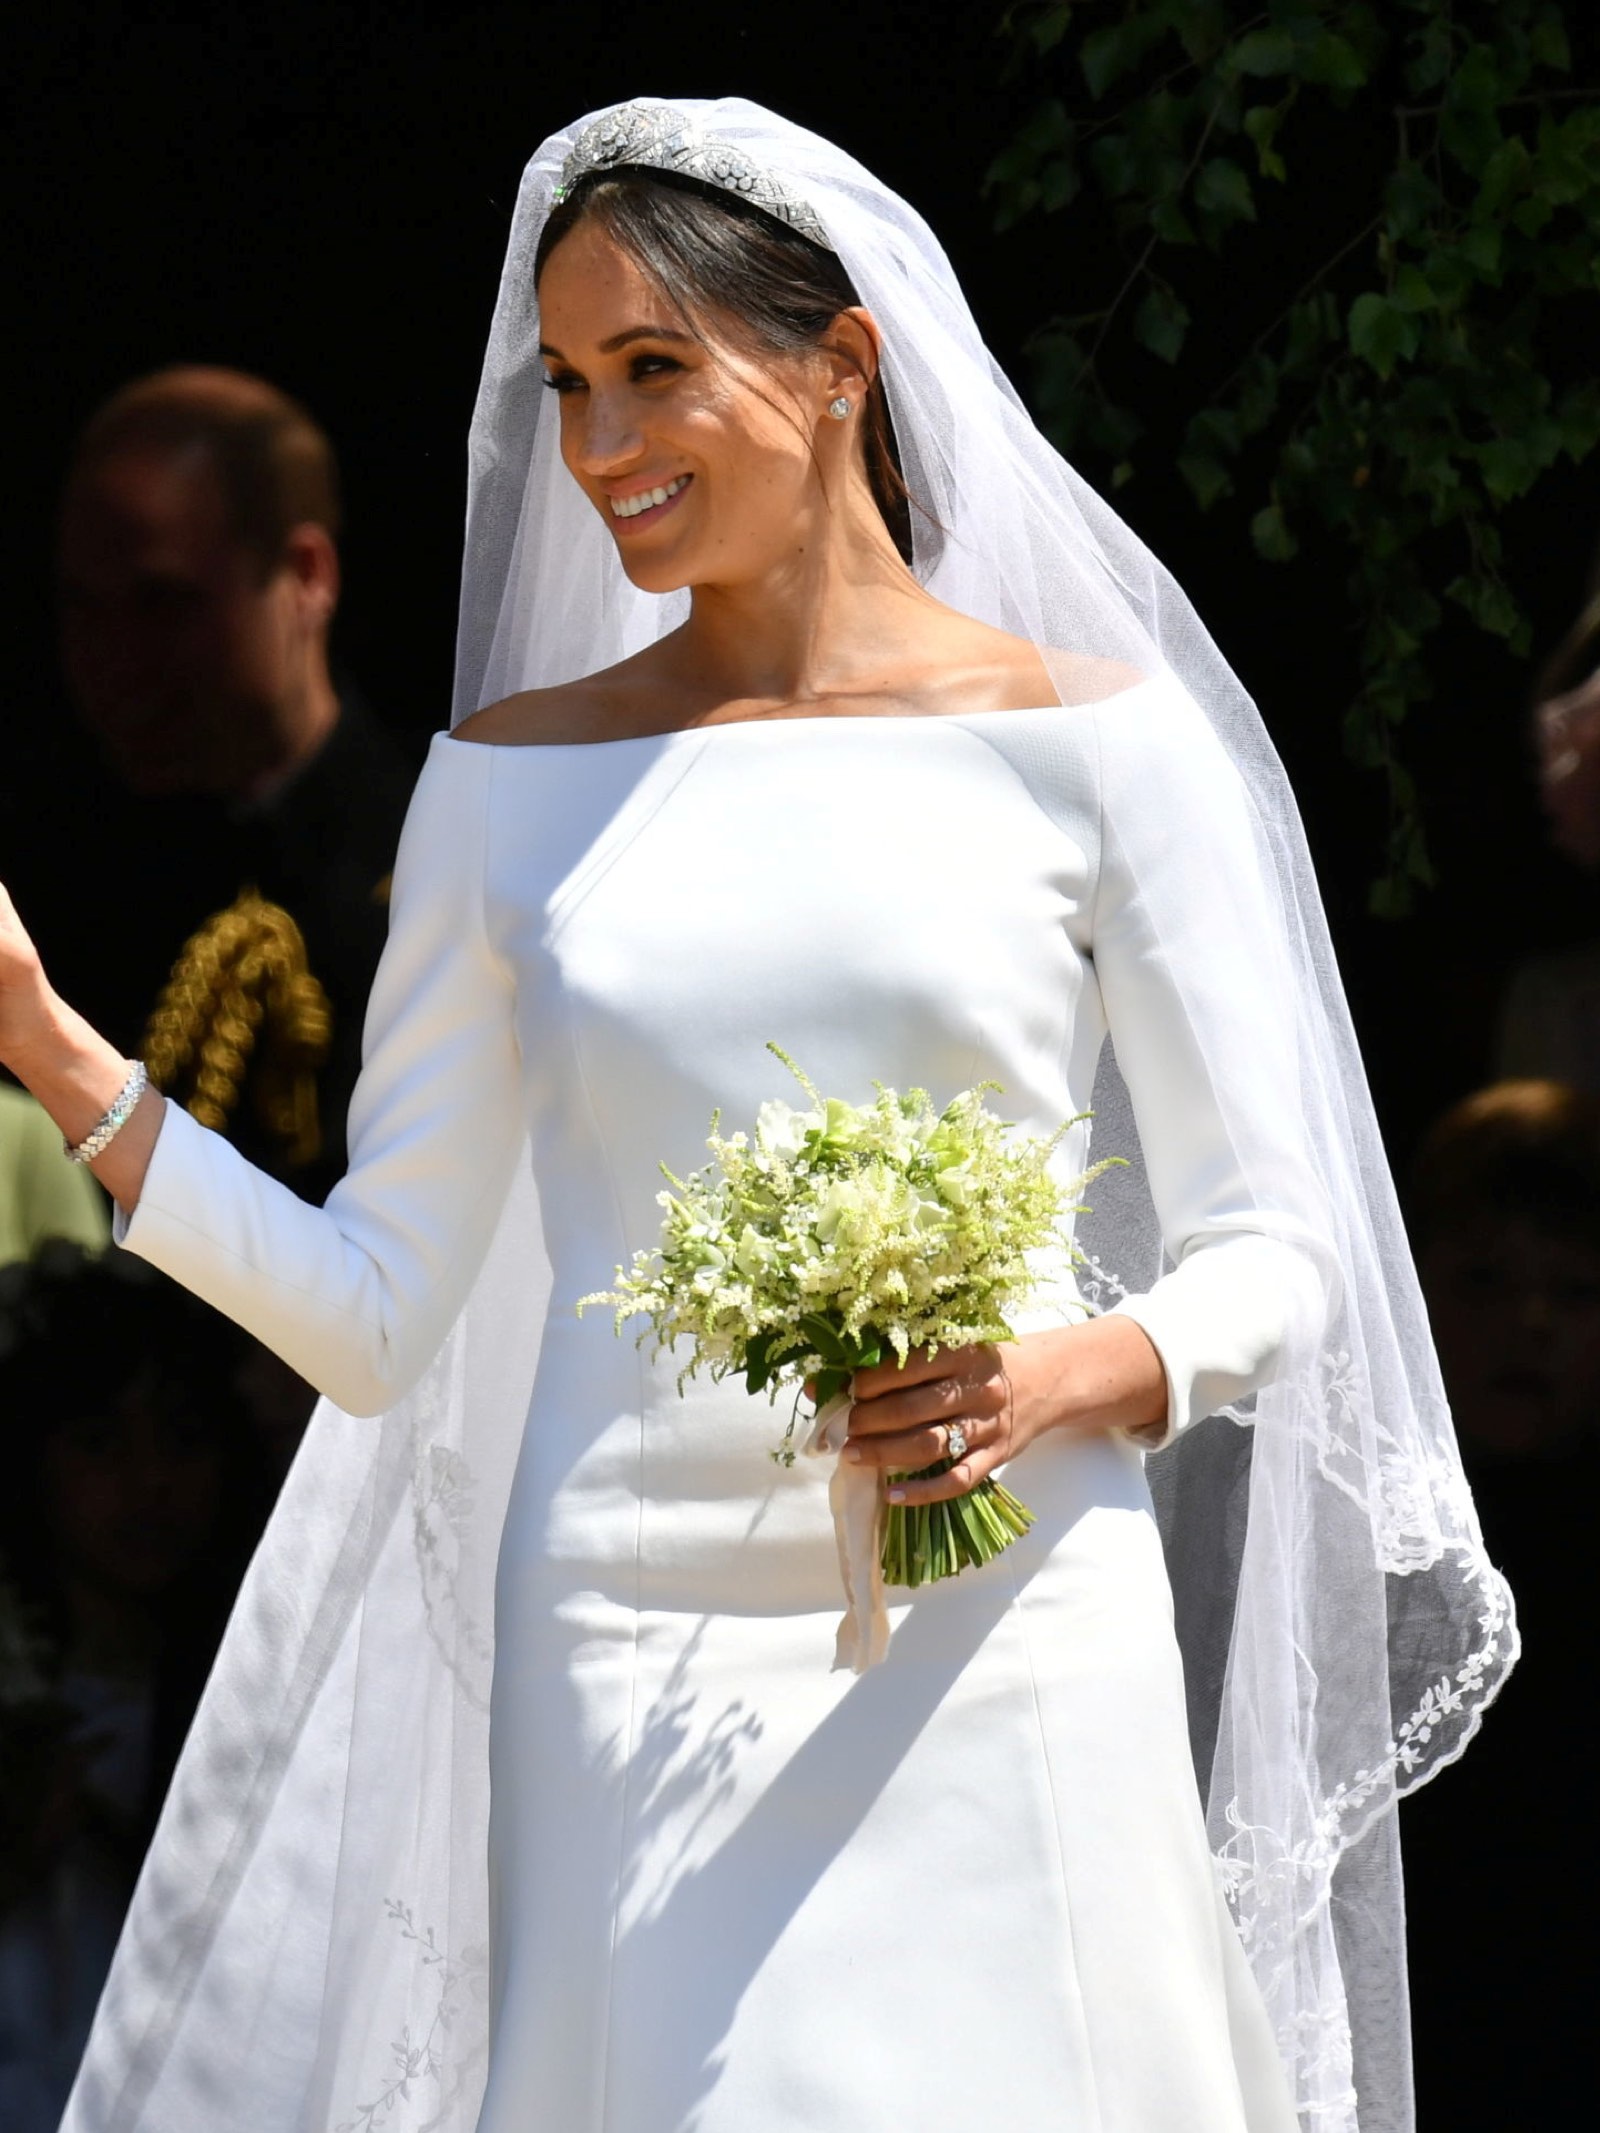 meghan royal wedding dress